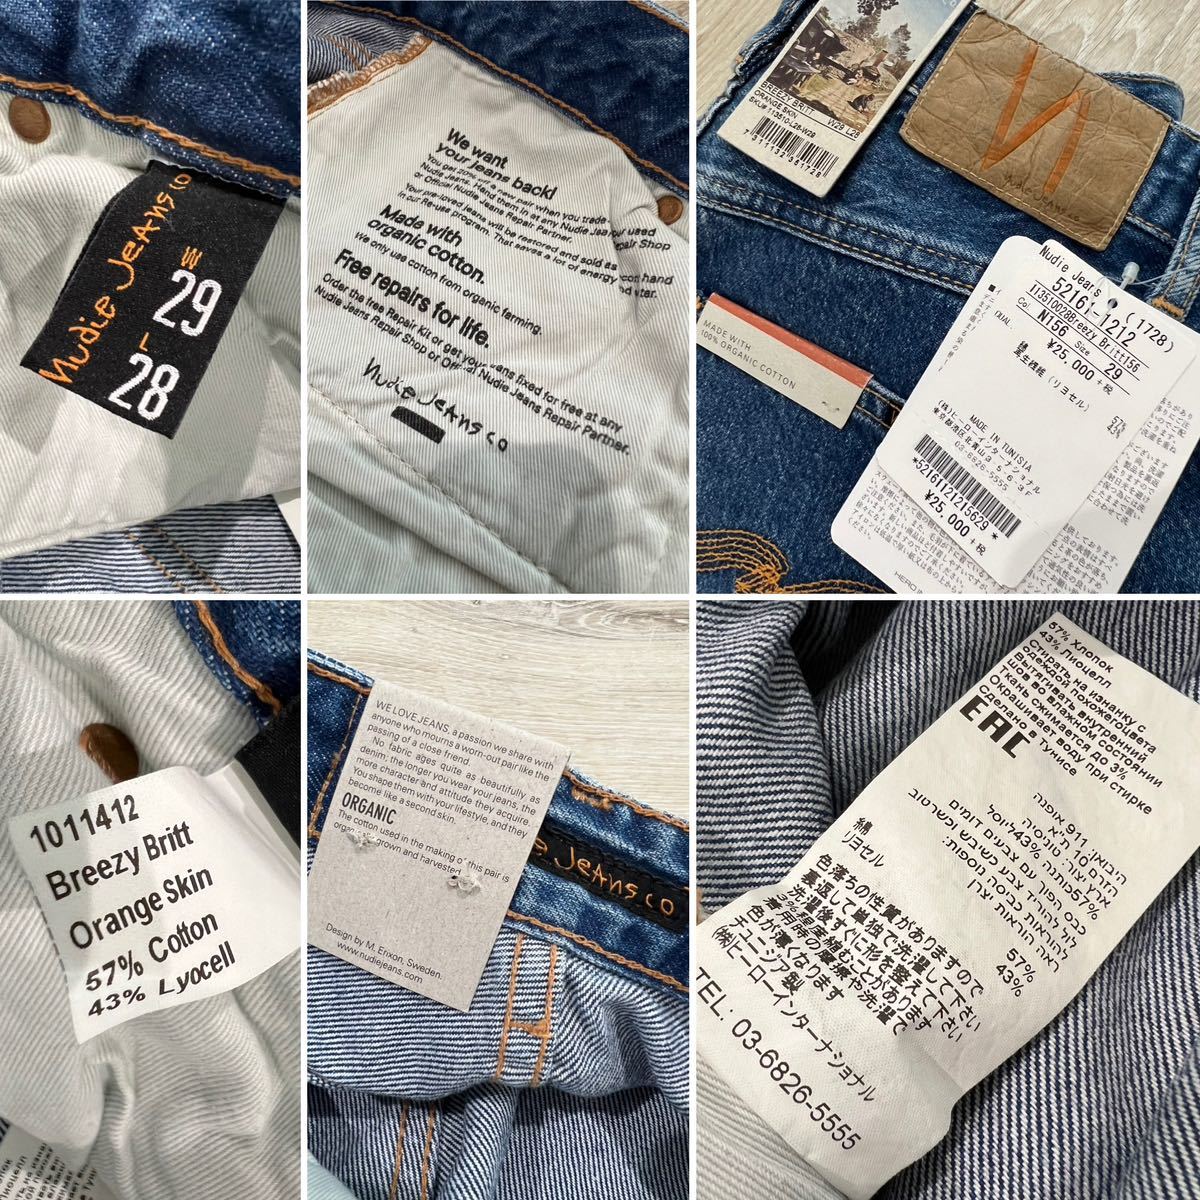 未使用☆[Nudie Jeans] 定価27,500 BREEZY BRITT オーガニックコットン インディゴデニムパンツ 29 メンズ ヌーディージーンズ_画像7